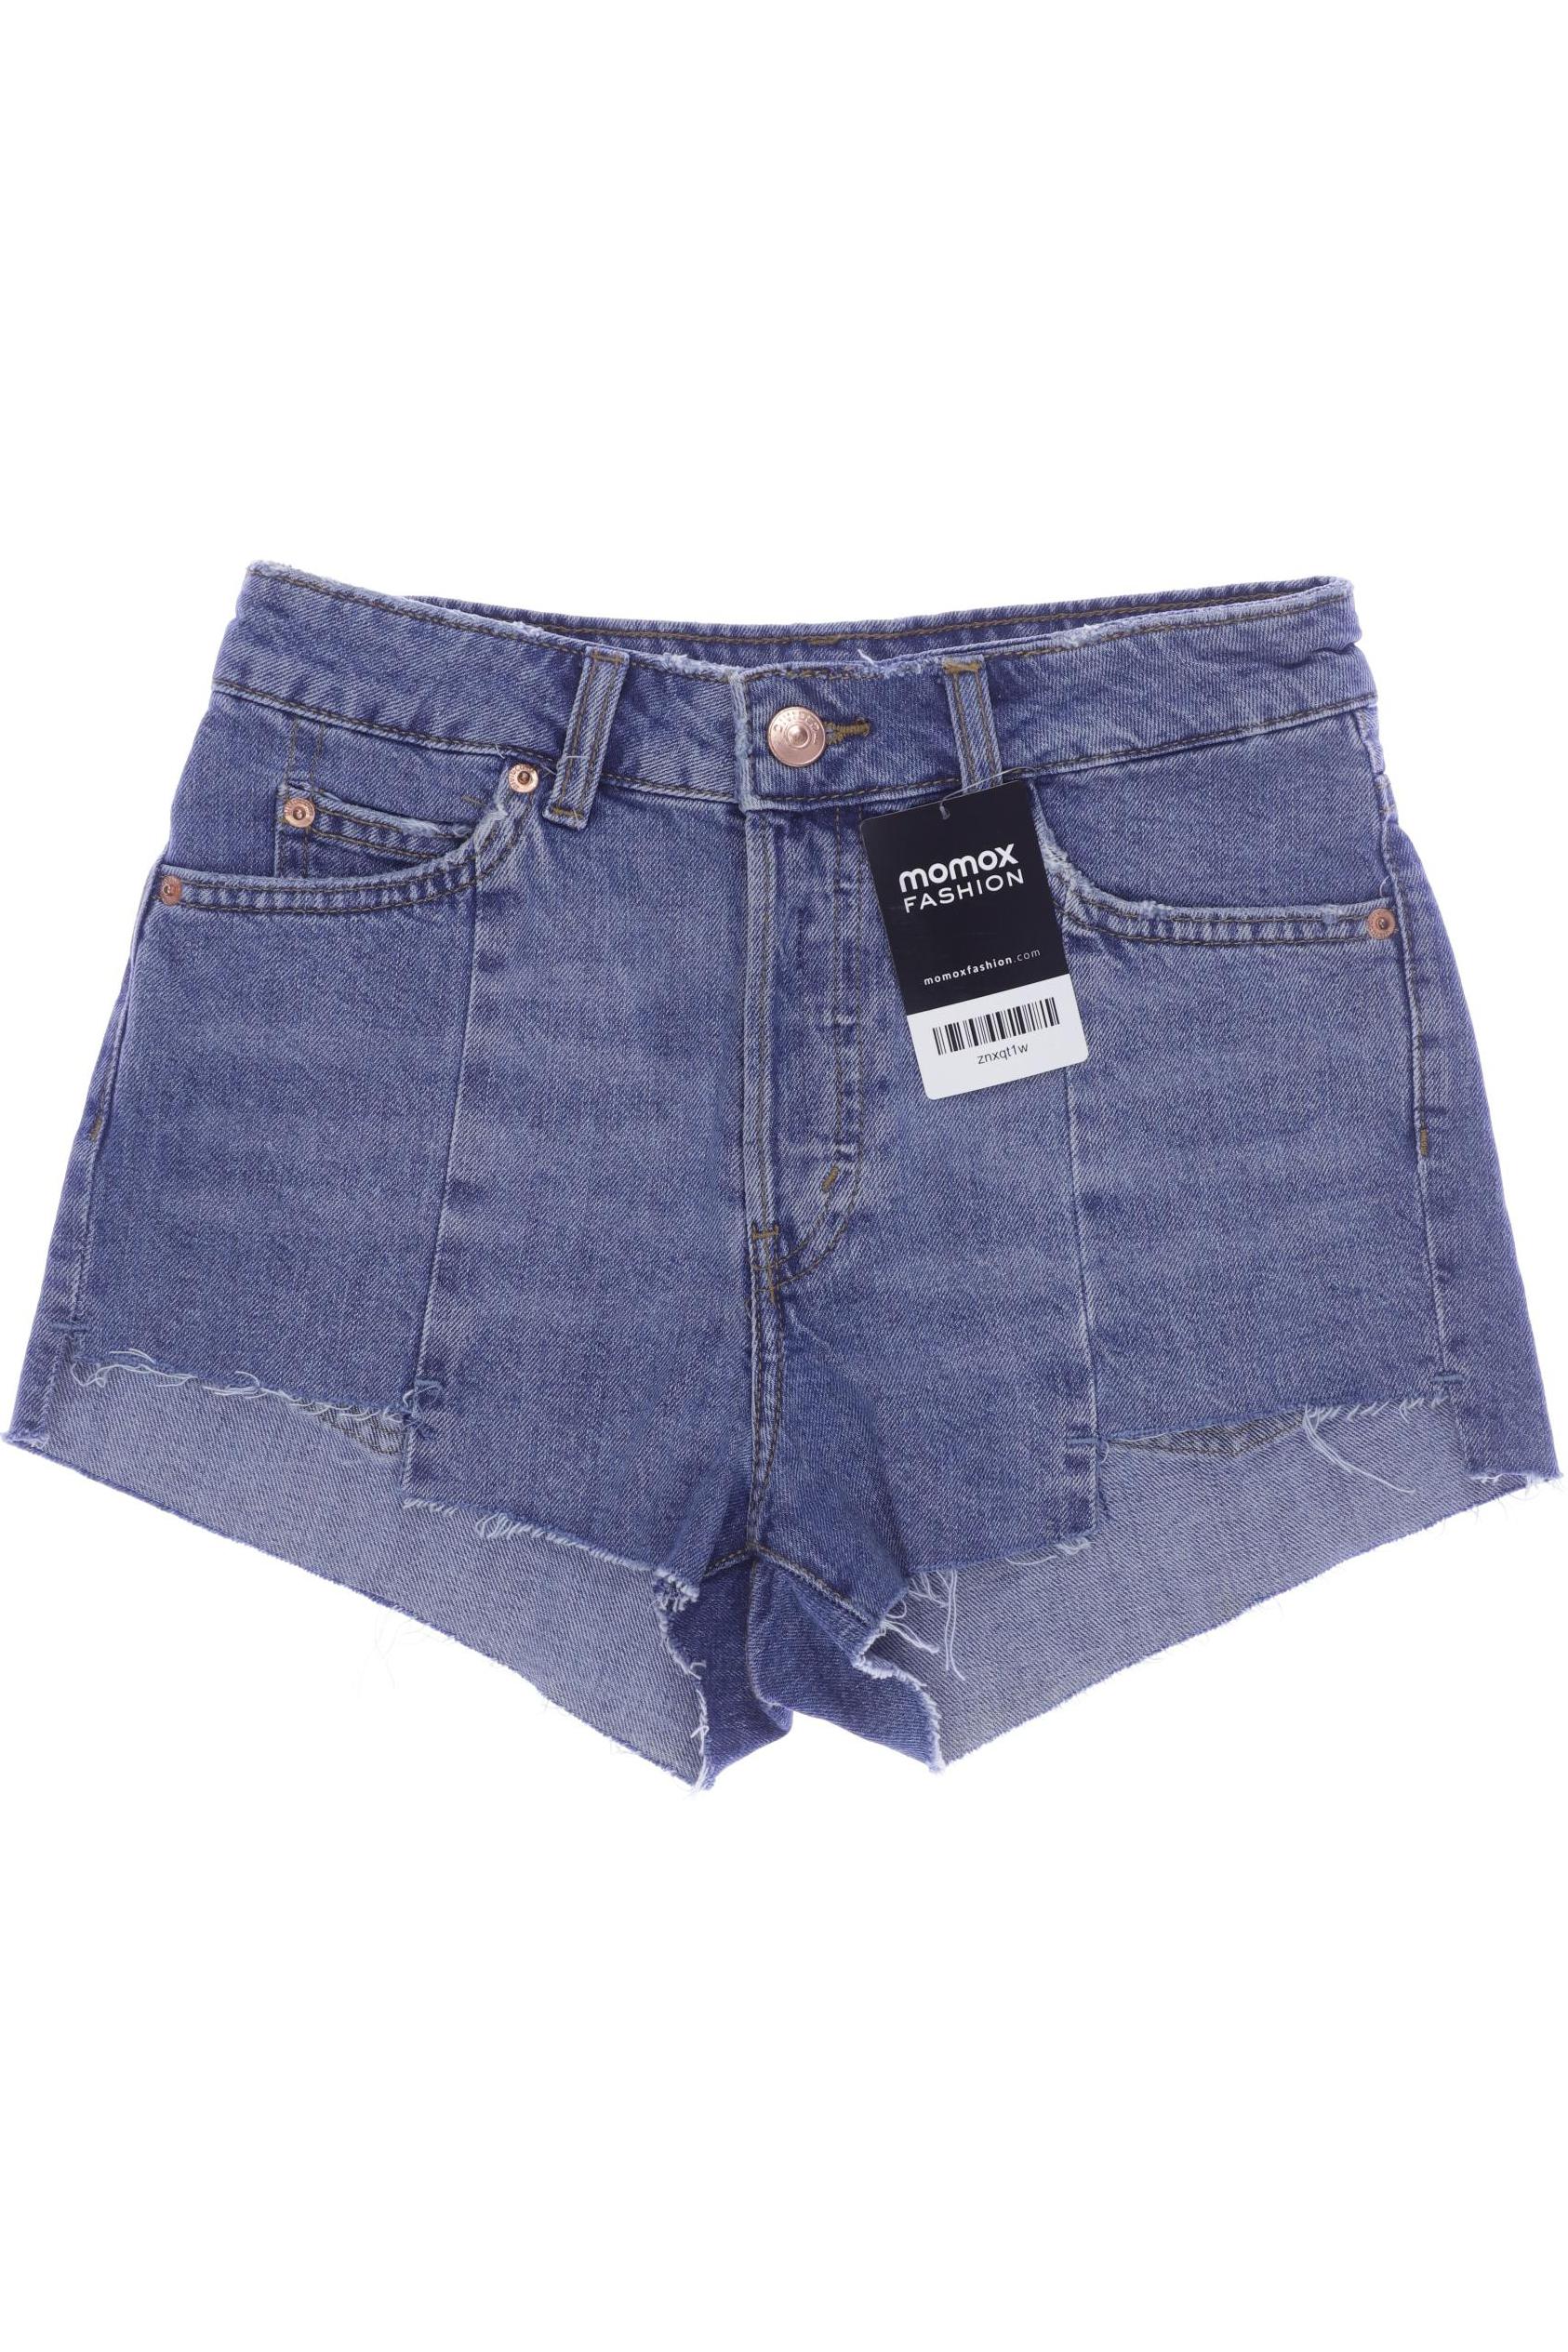 H&M Damen Shorts, blau, Gr. 34 von H&M